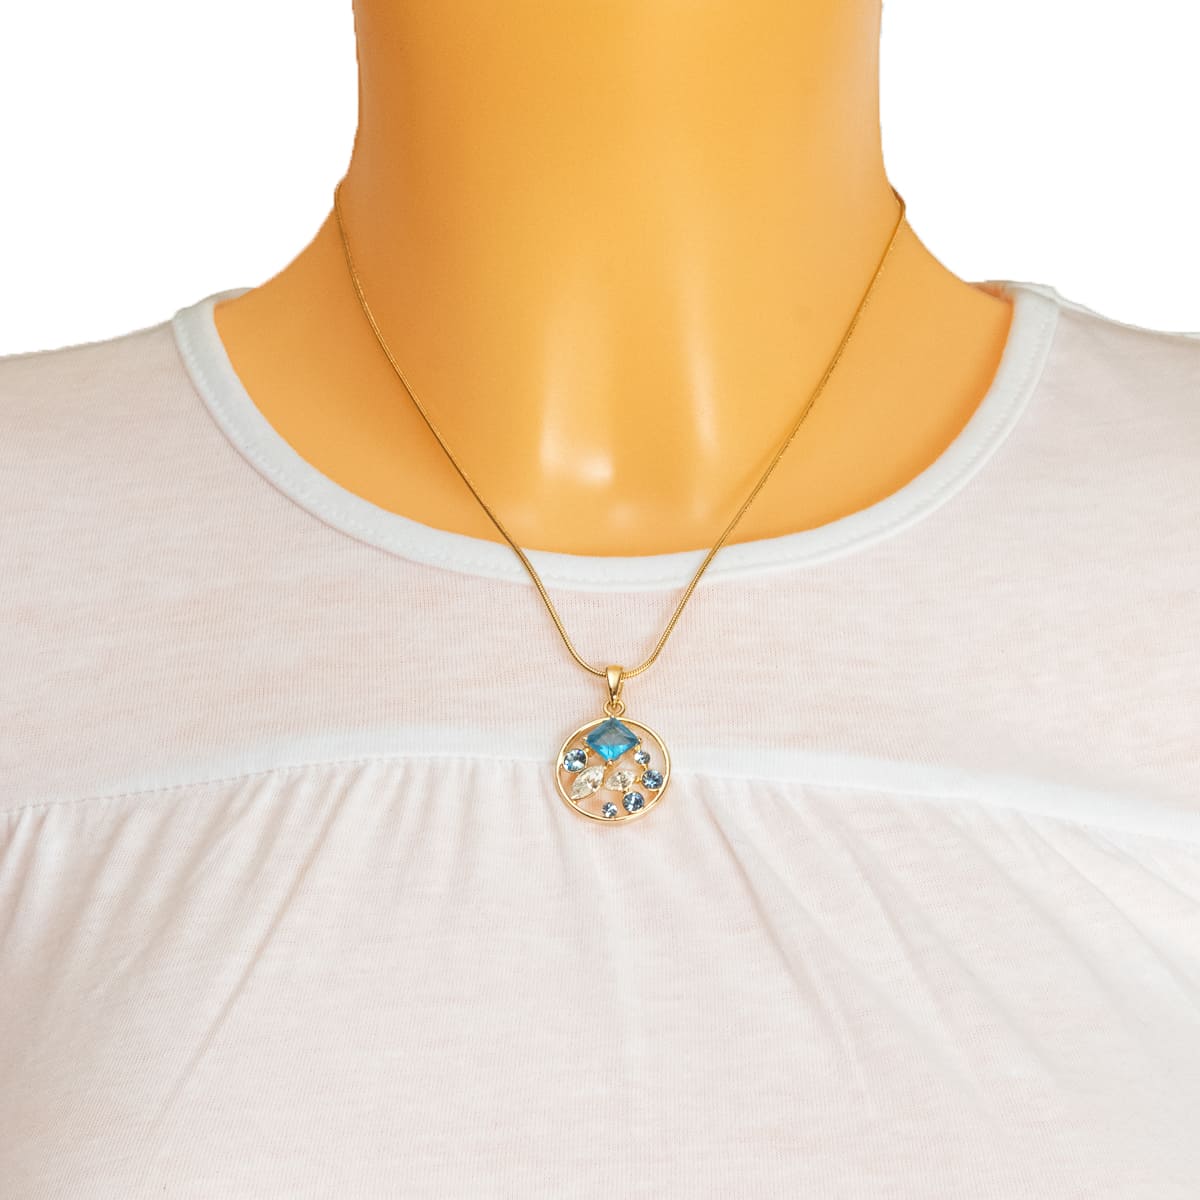 K.V. Fuchs Design Schmuck Damen Halskette in gold mit Schmucksteinen in blau, weiß und Zirkonia in weiß »K-1705«